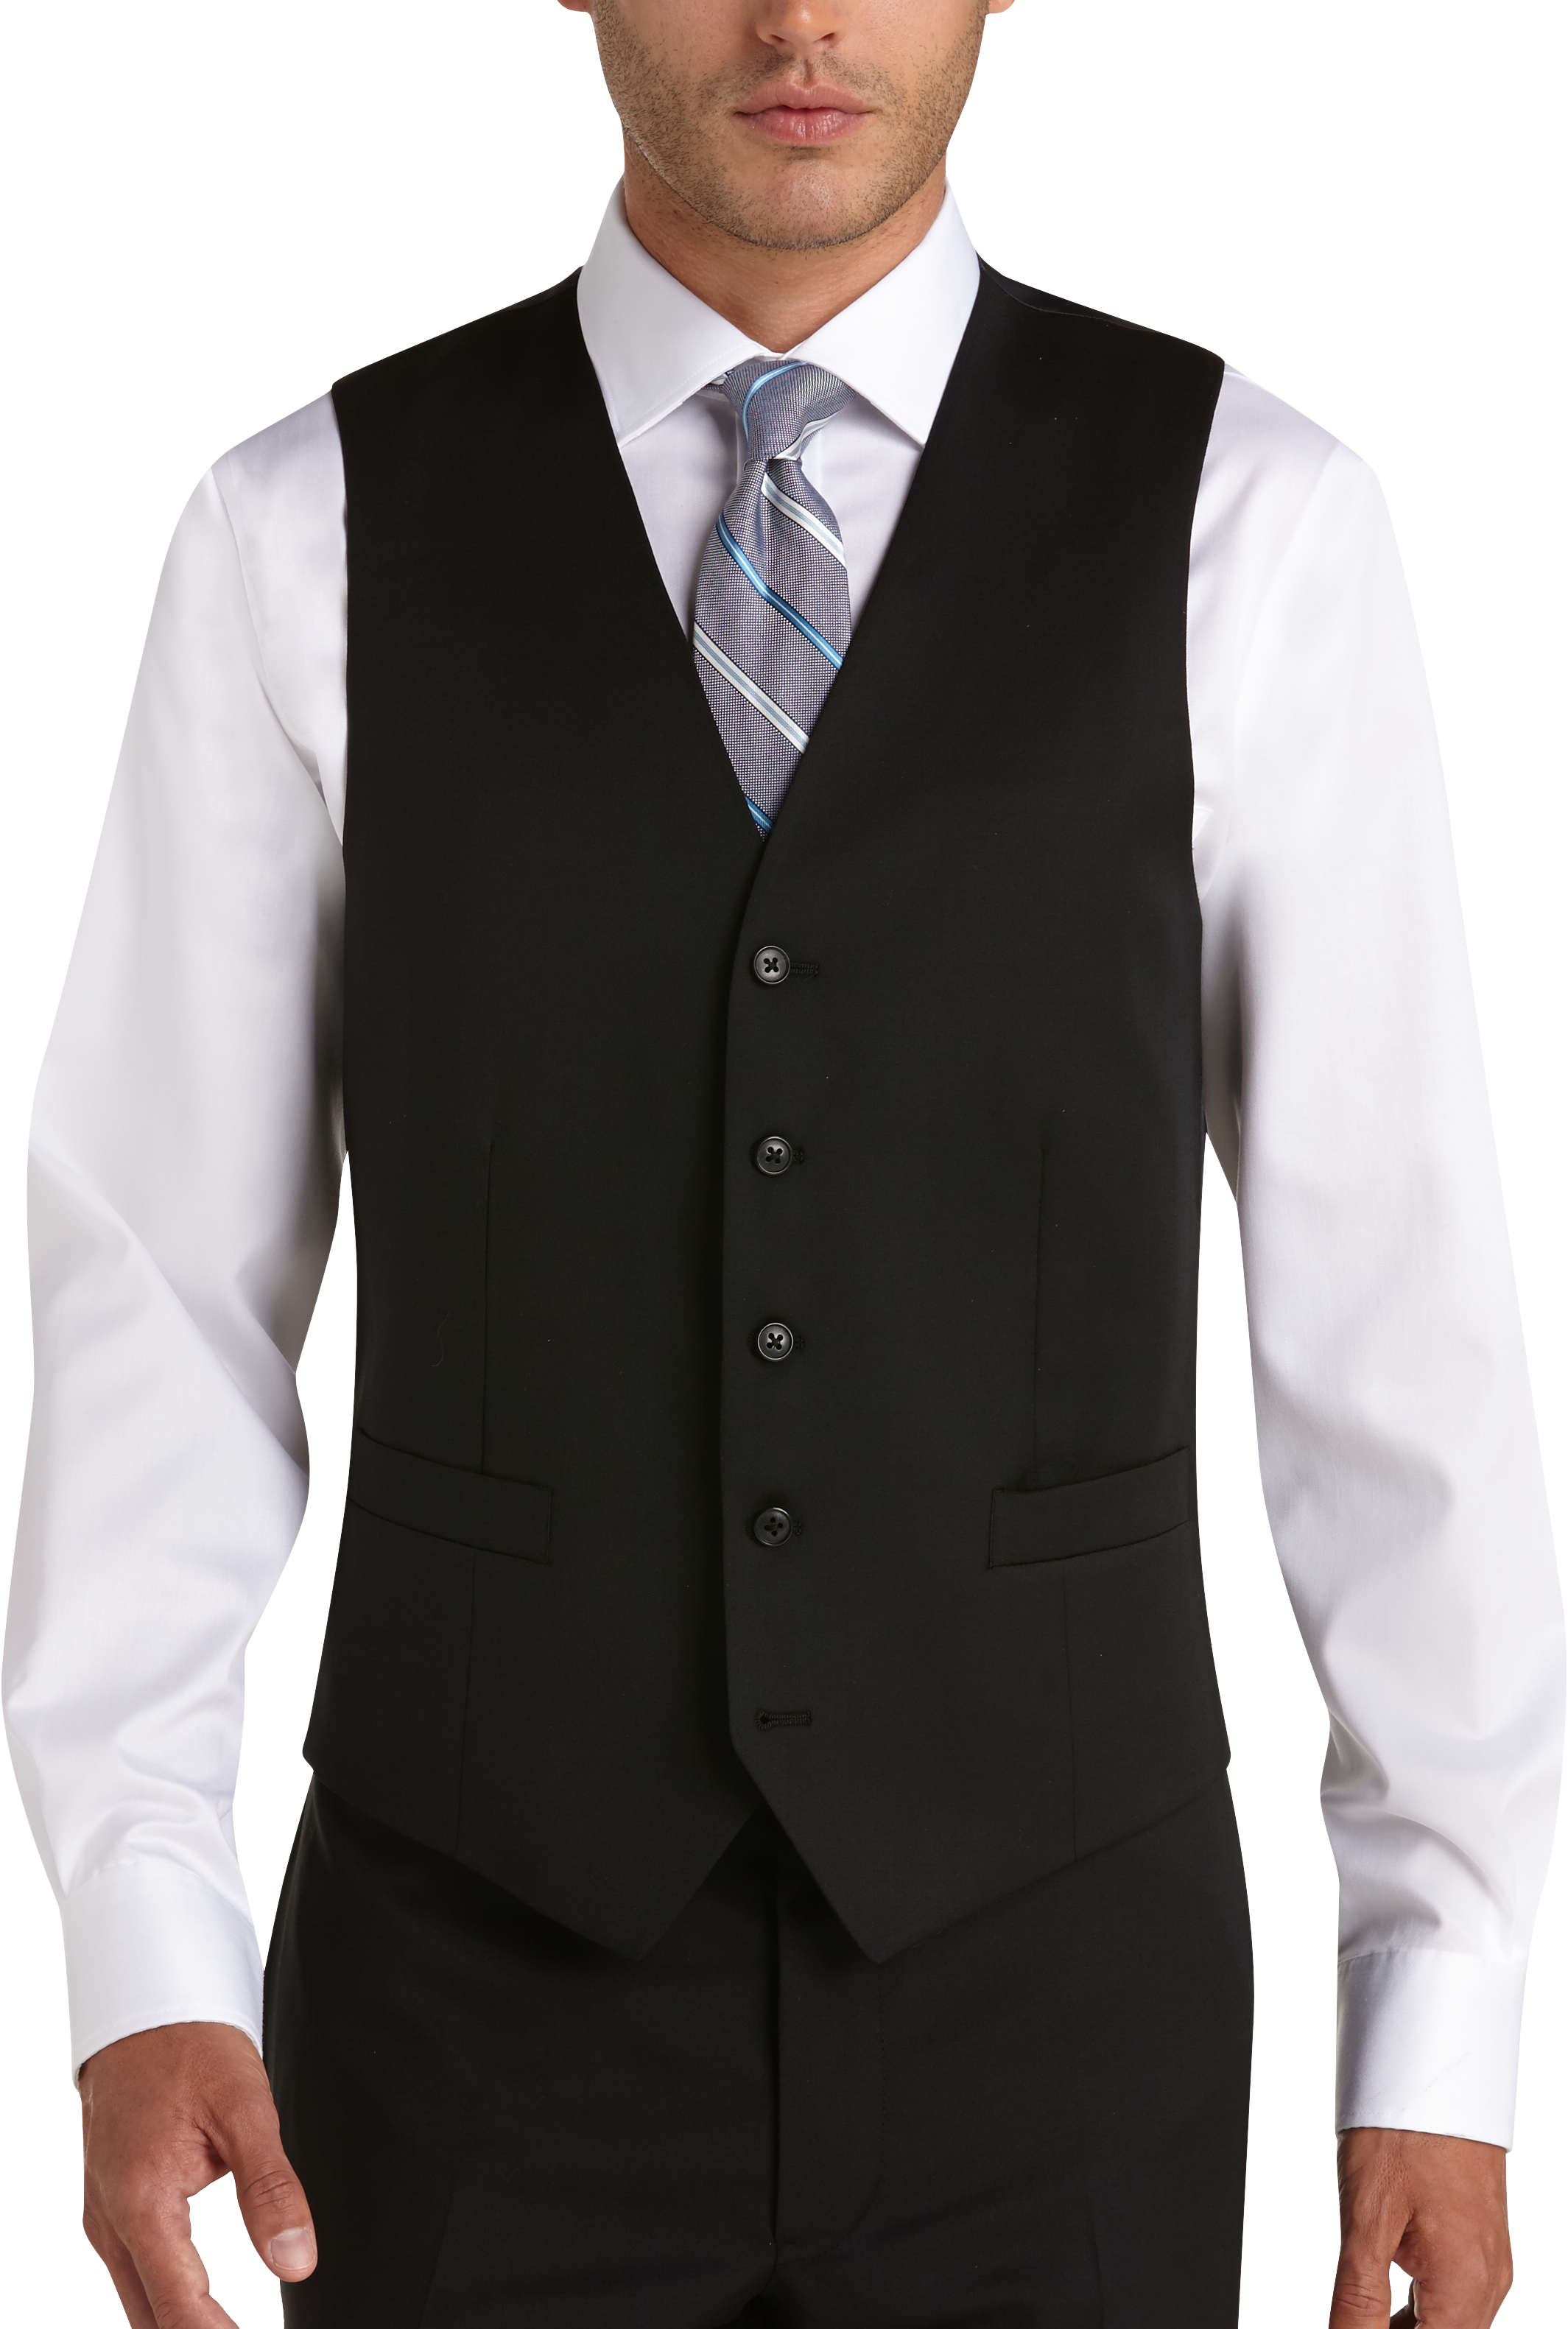 Joseph Abboud Black Modern Fit Suit Separates Vest - Men's Suits | Men ...